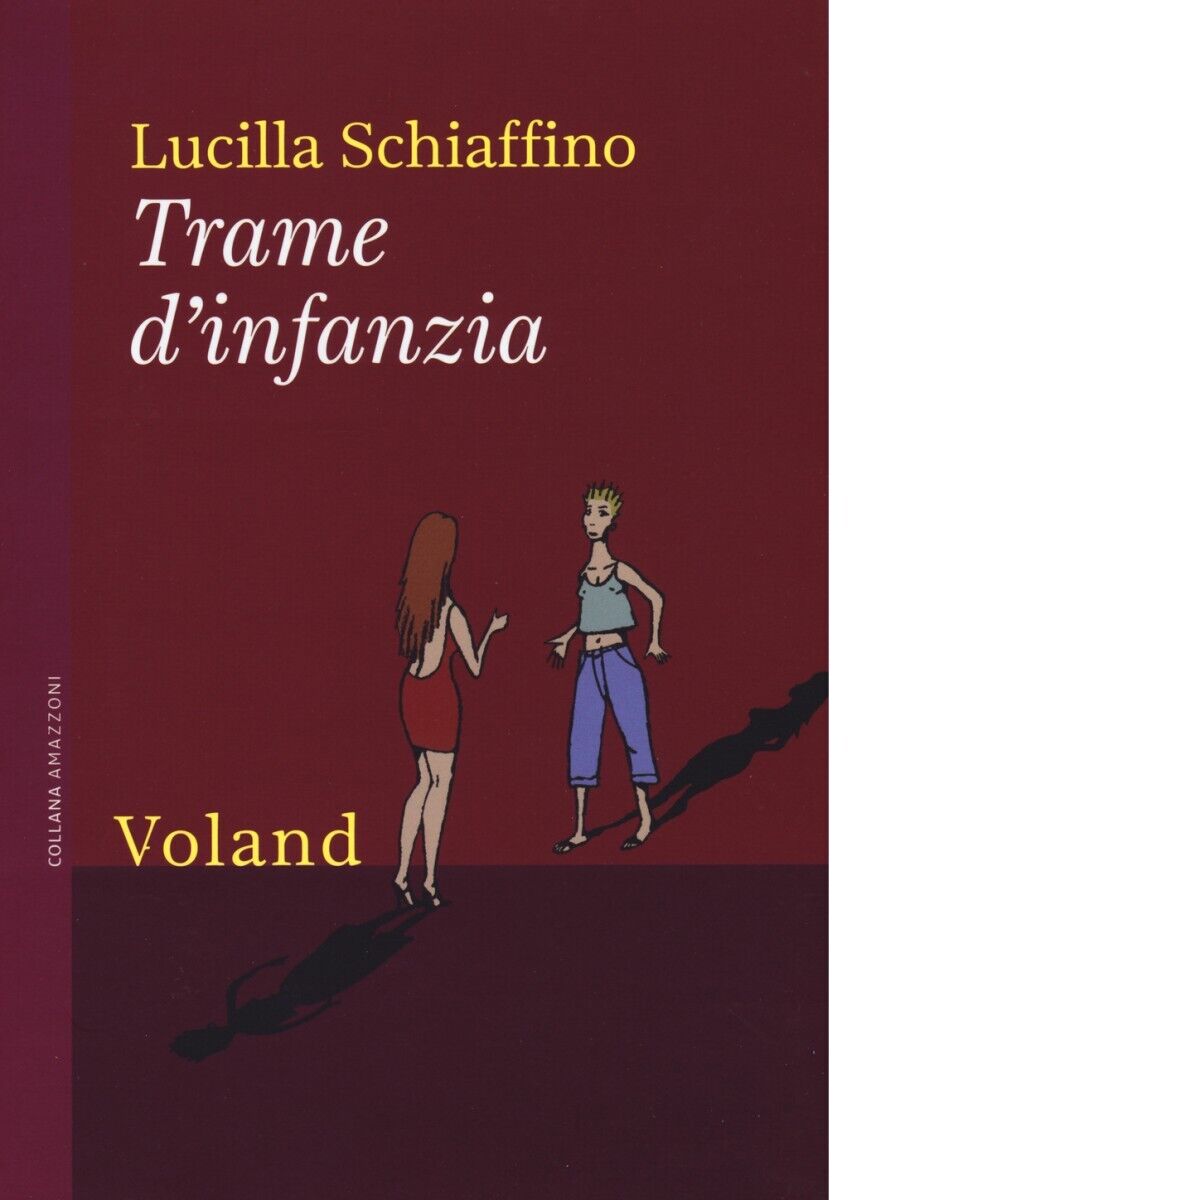 Trame d'infanzia di Lucilla Schiaffino, 2015, Voland